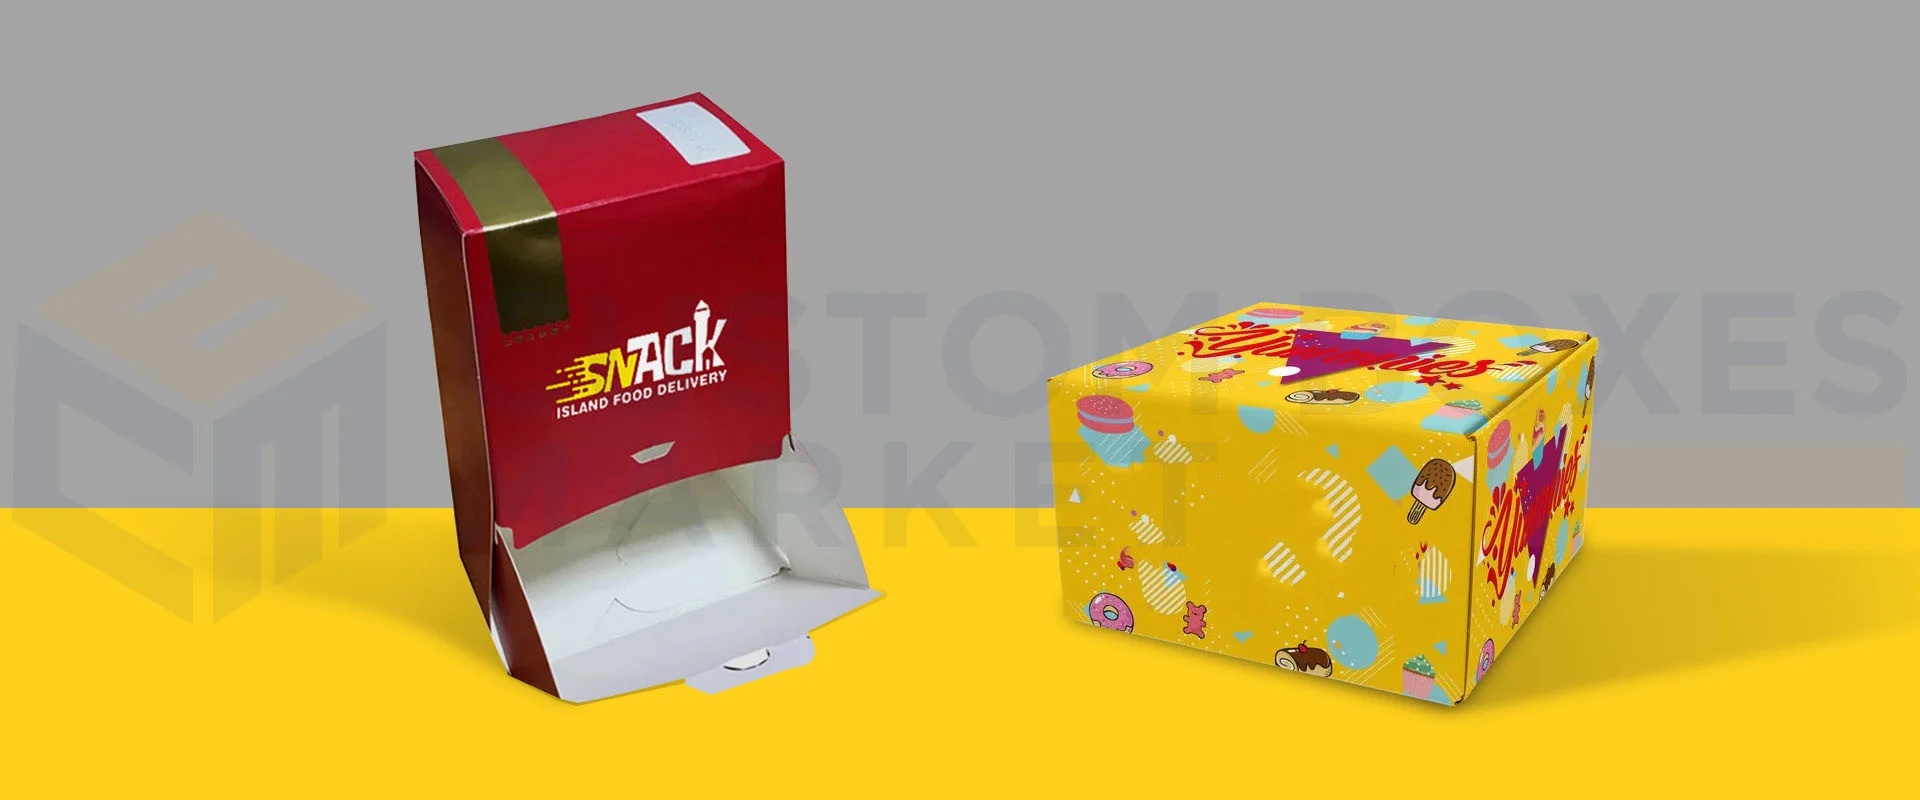 printed-snack-packaging